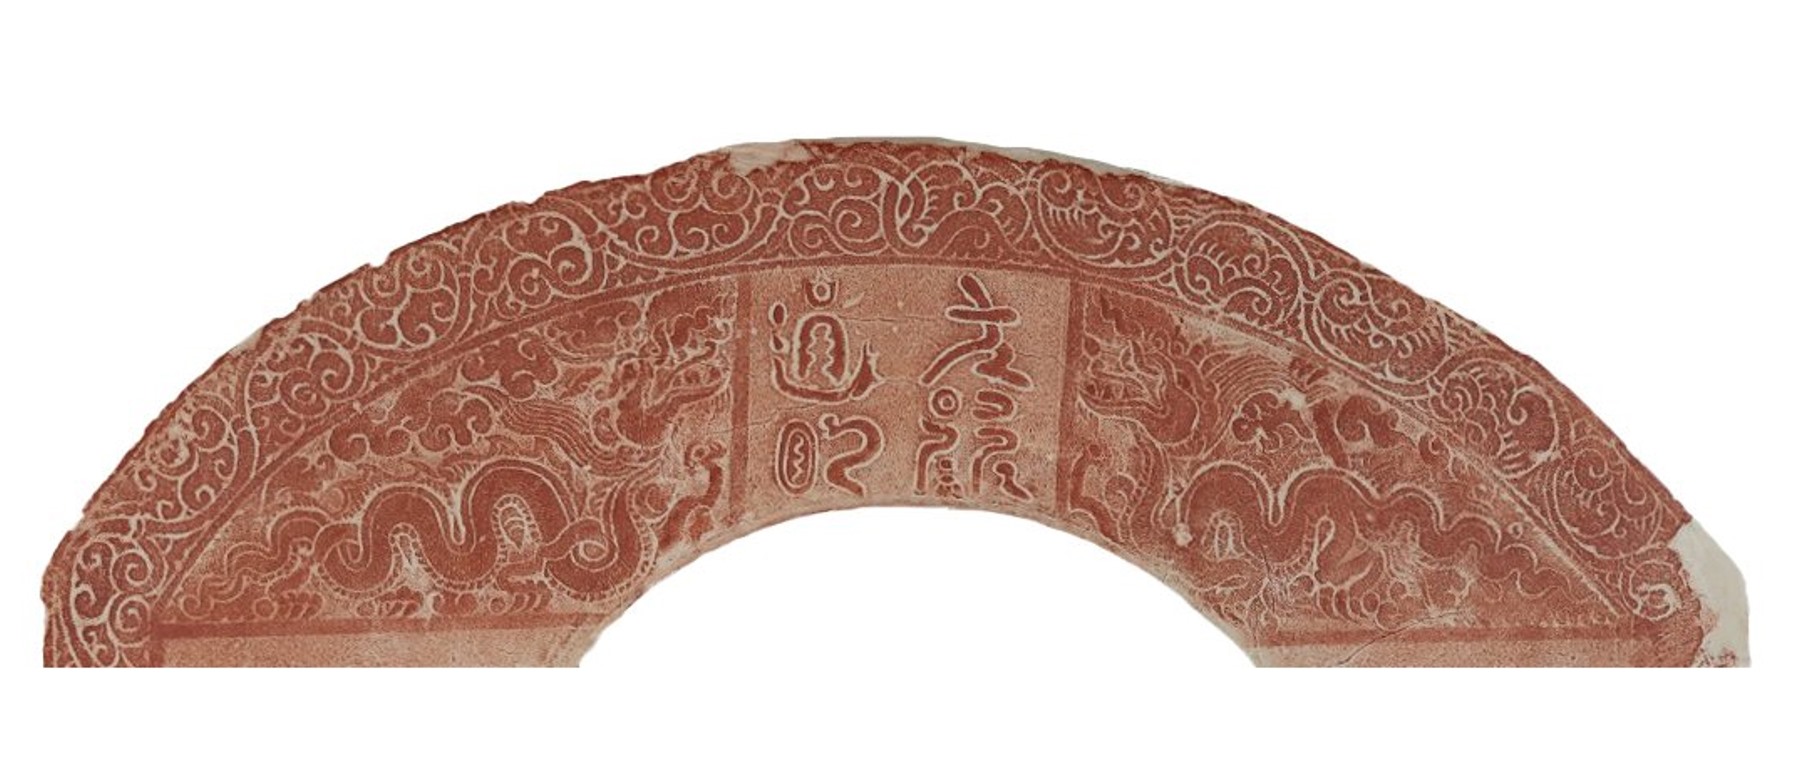 Cổ vật chùa Giàu ở Hà Nam, bia đá khắc họa chân dung vua Ngọc Hoàng sớm nhất lịch sử nghệ thuật Đại Việt - Ảnh 4.